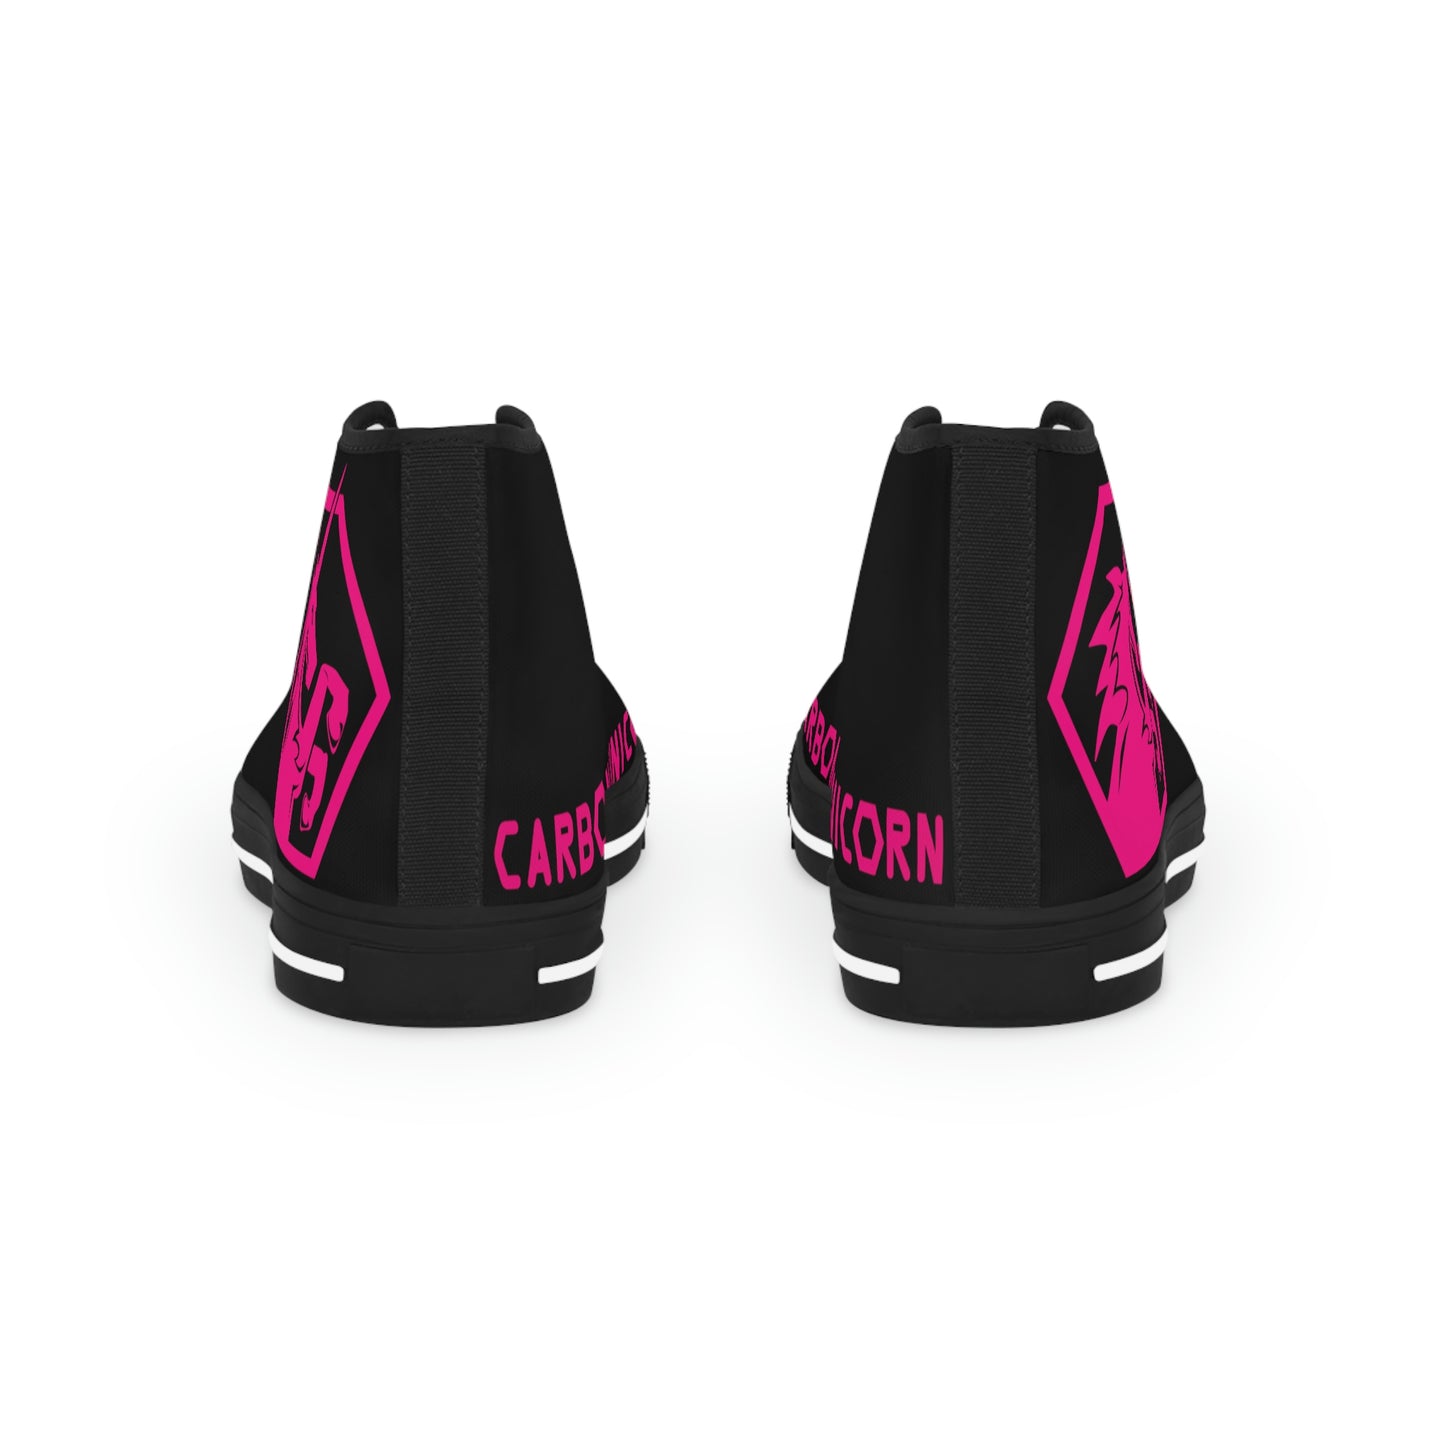 Black w/Pink High Top Sneakers